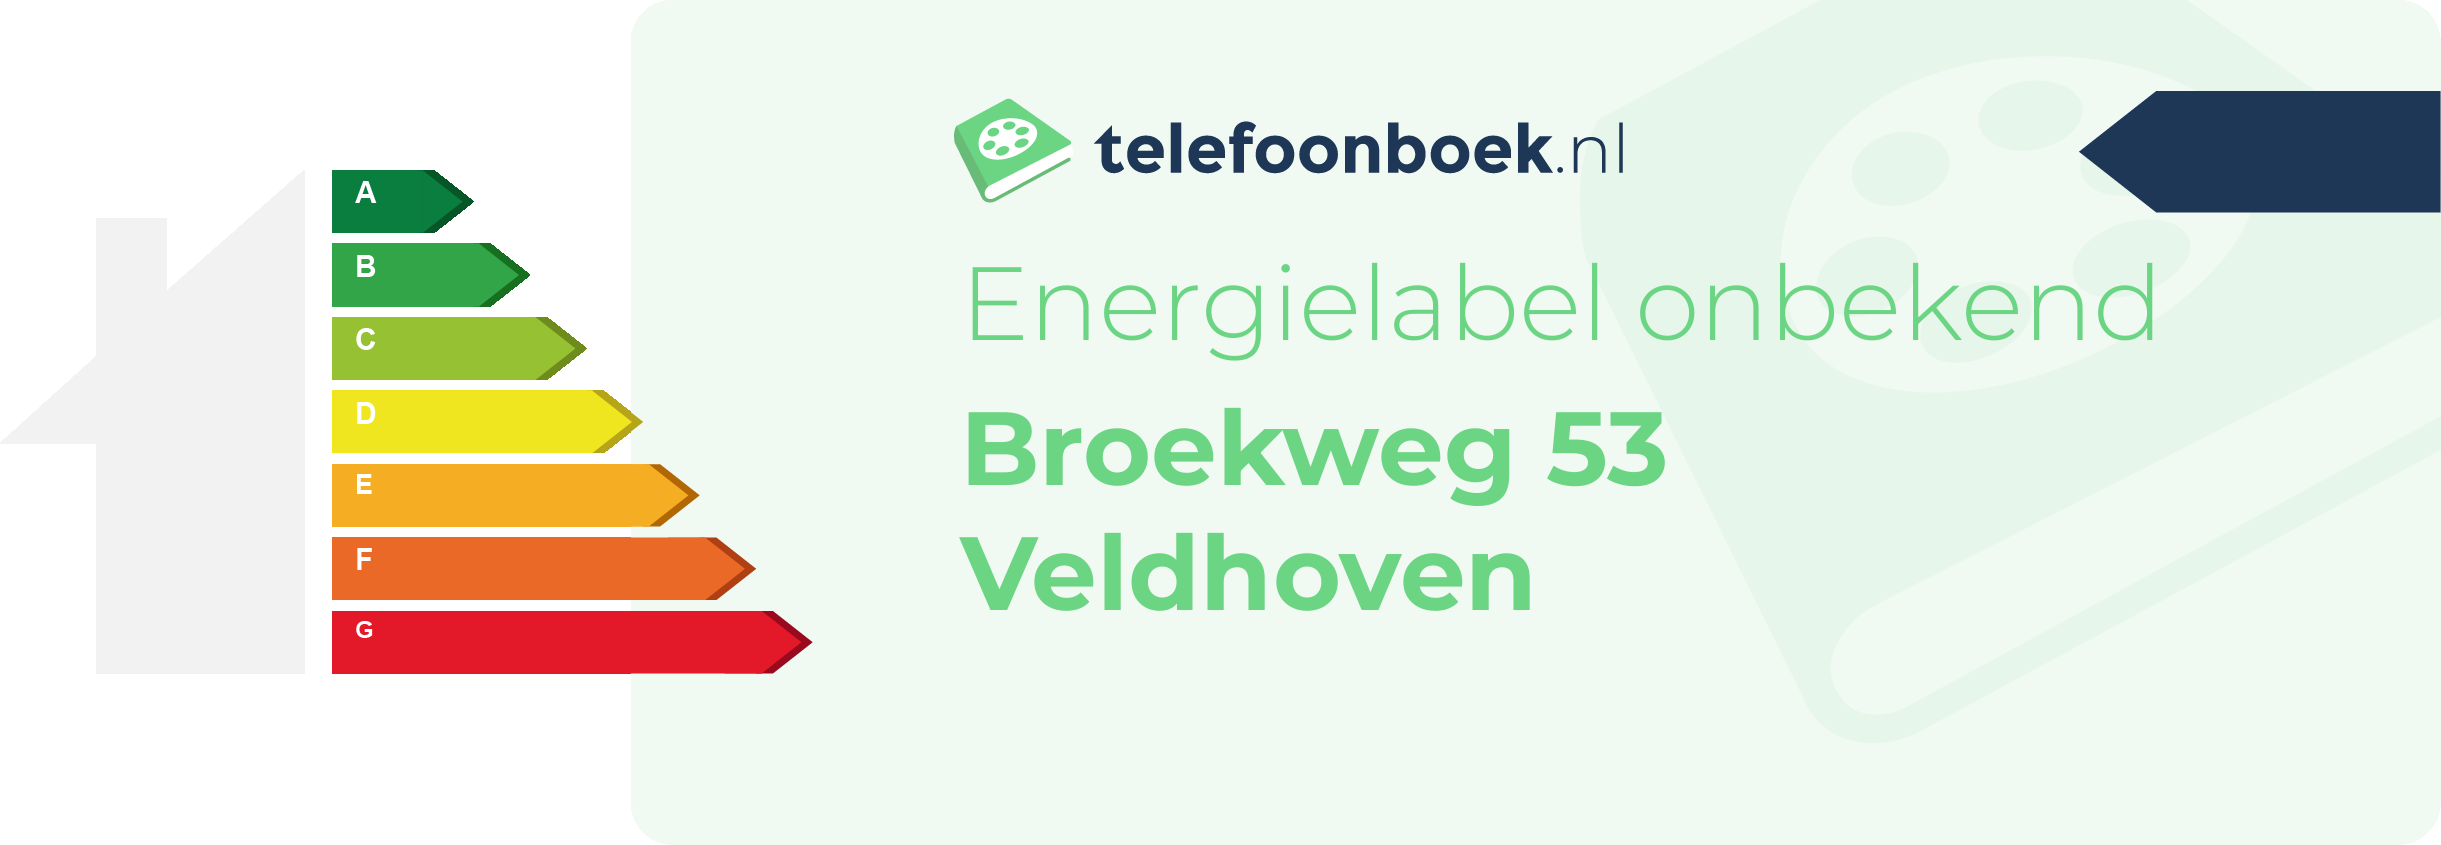 Energielabel Broekweg 53 Veldhoven